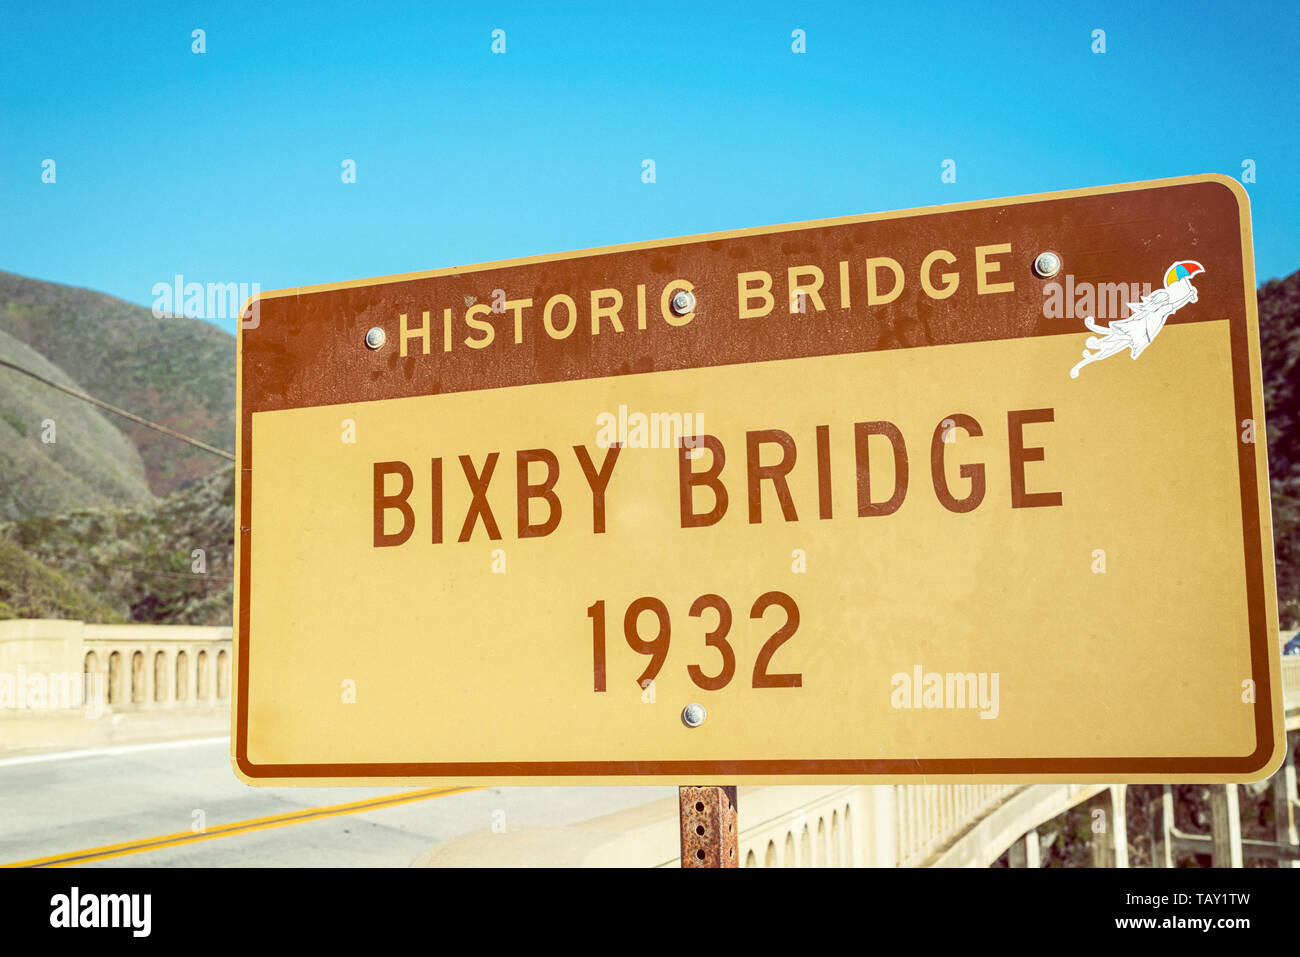 Bixby Puente firmar. Big Sur, California, Estados Unidos. Fotografía procesada con foto antigua/vintage efecto. Foto de stock